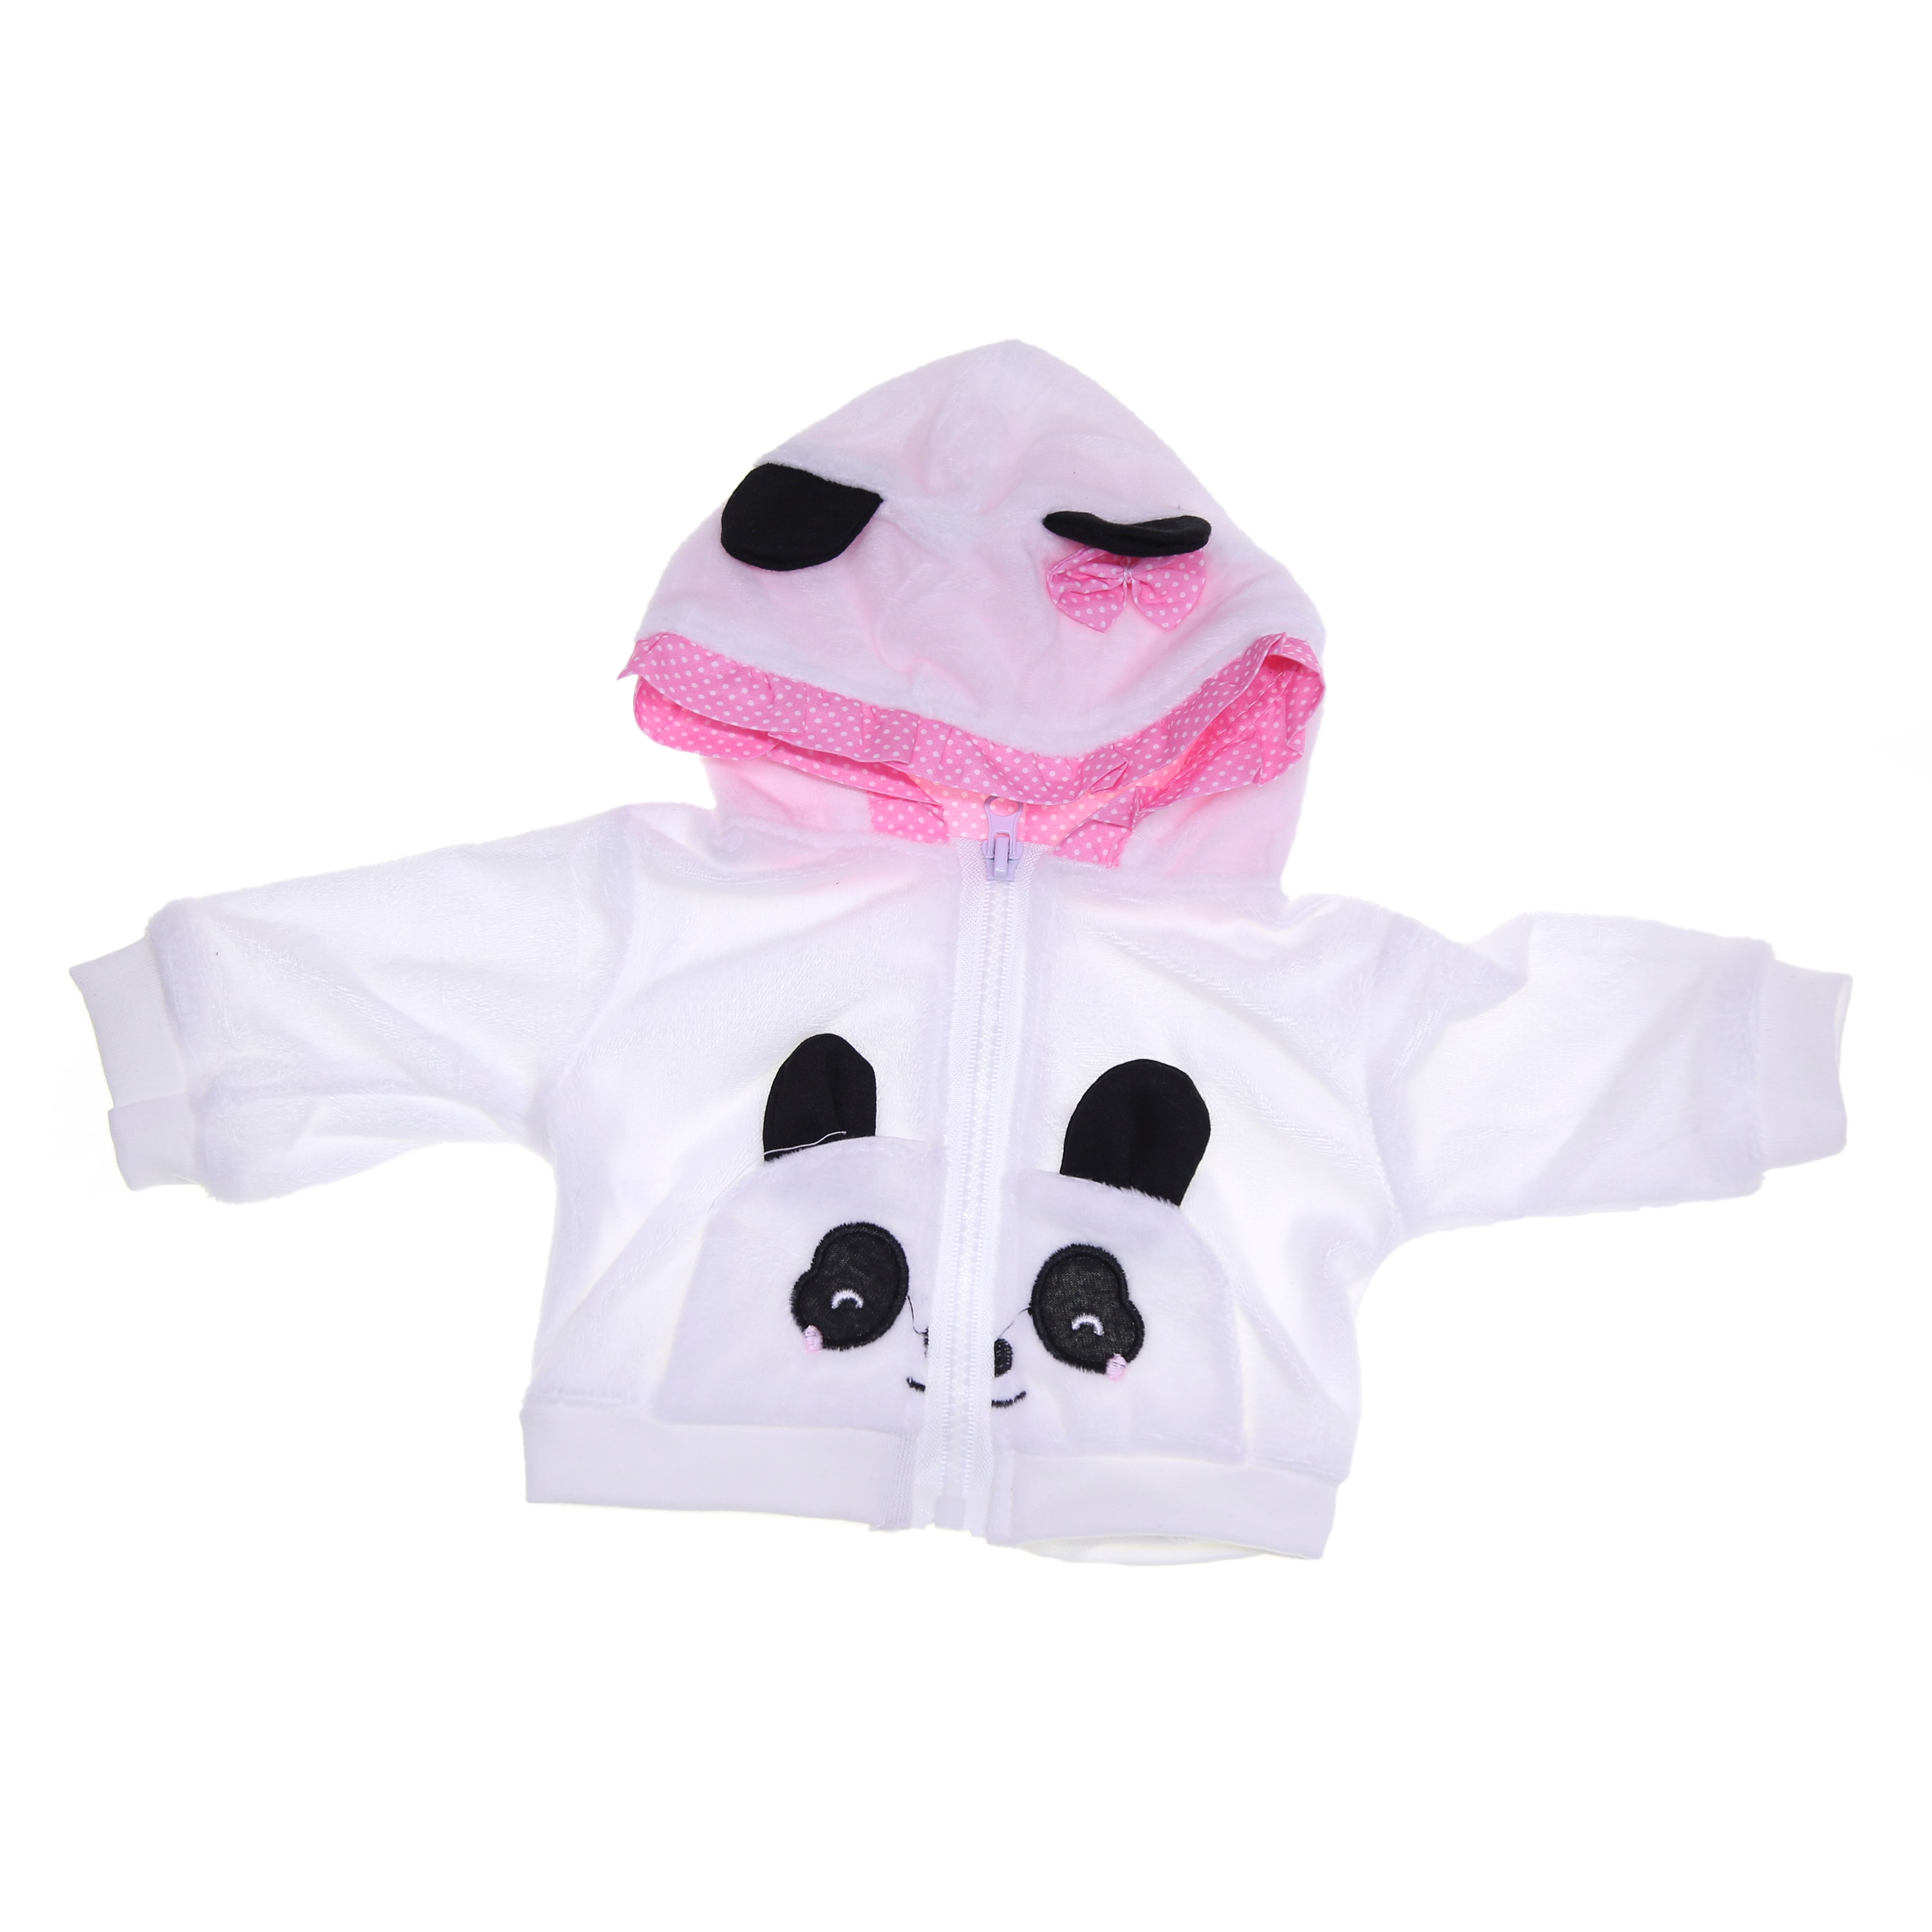 Panda tegneserie tøj sæt babytøj pige nyfødt 18 tommer  or 23 tommer kan vælges genfødt dukker babytøj pige